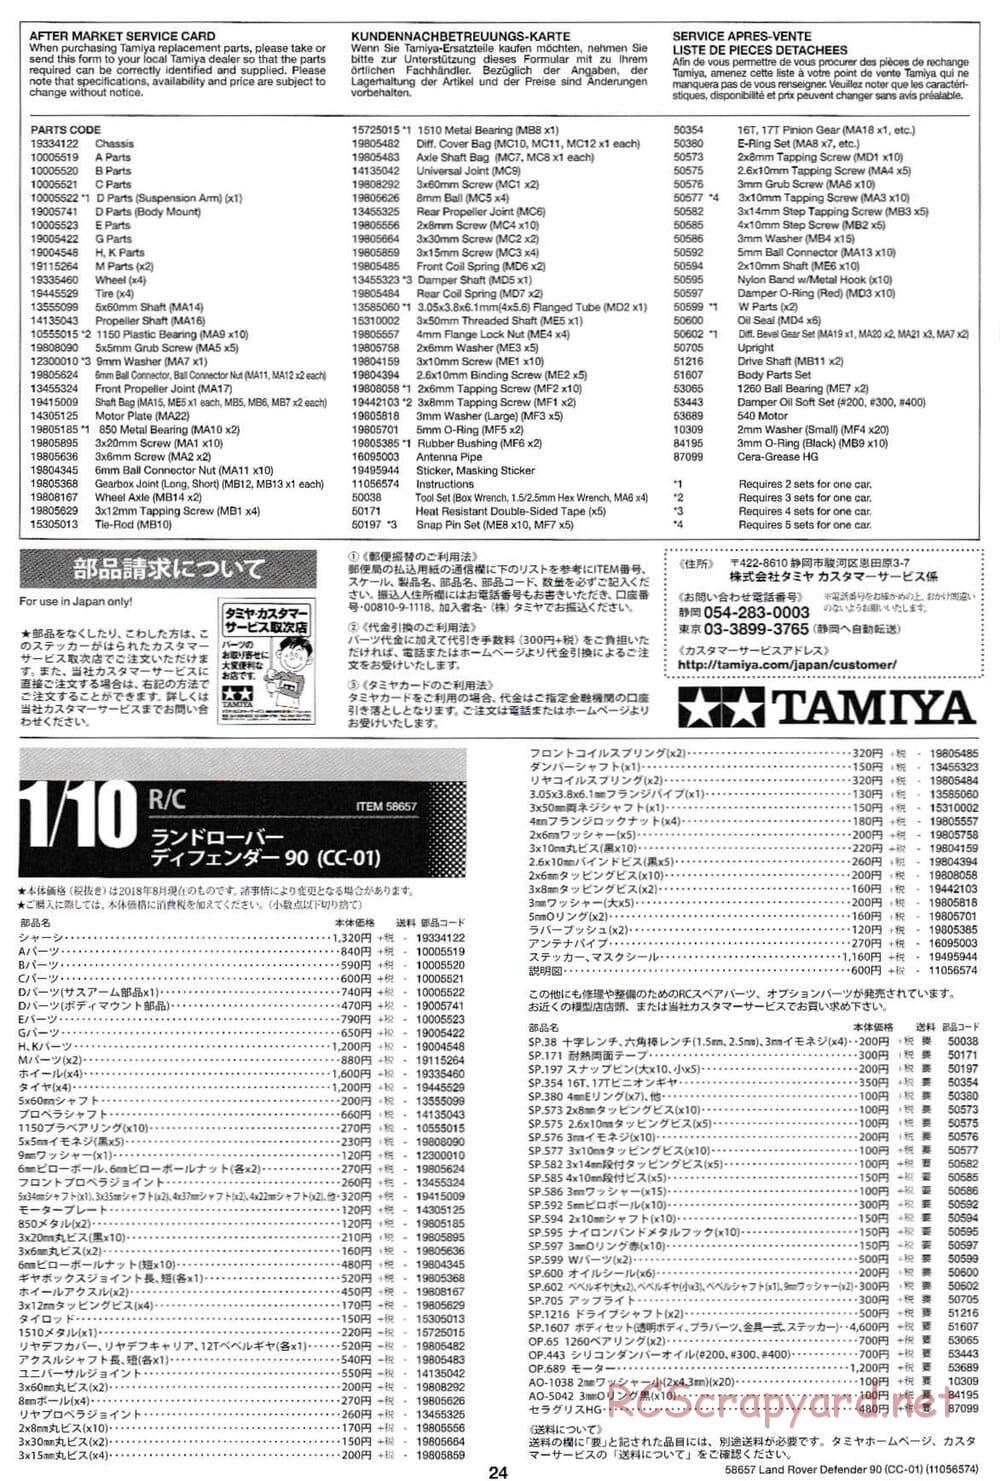 Tamiya - Land Rover Defender 90 - CC-01 Chassis - Manual - Page 24